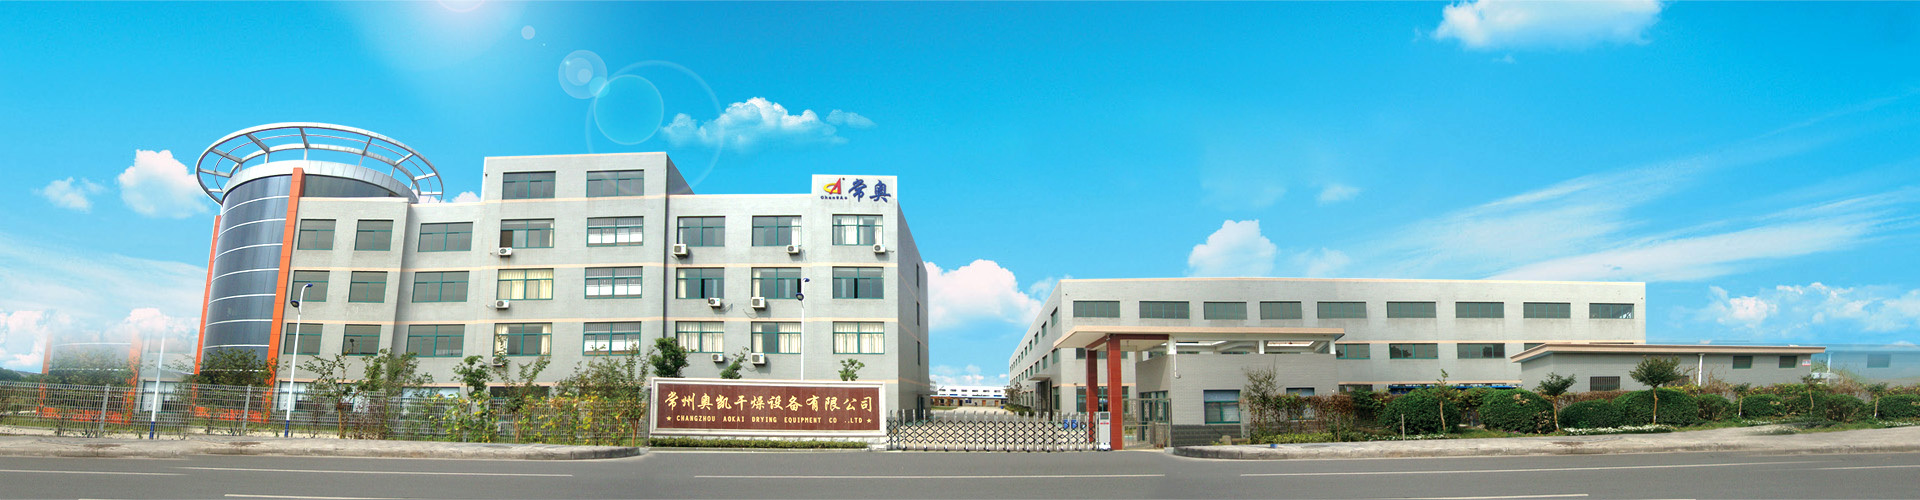 Changzhou Aokai Drying Equipment Co., Ltd.